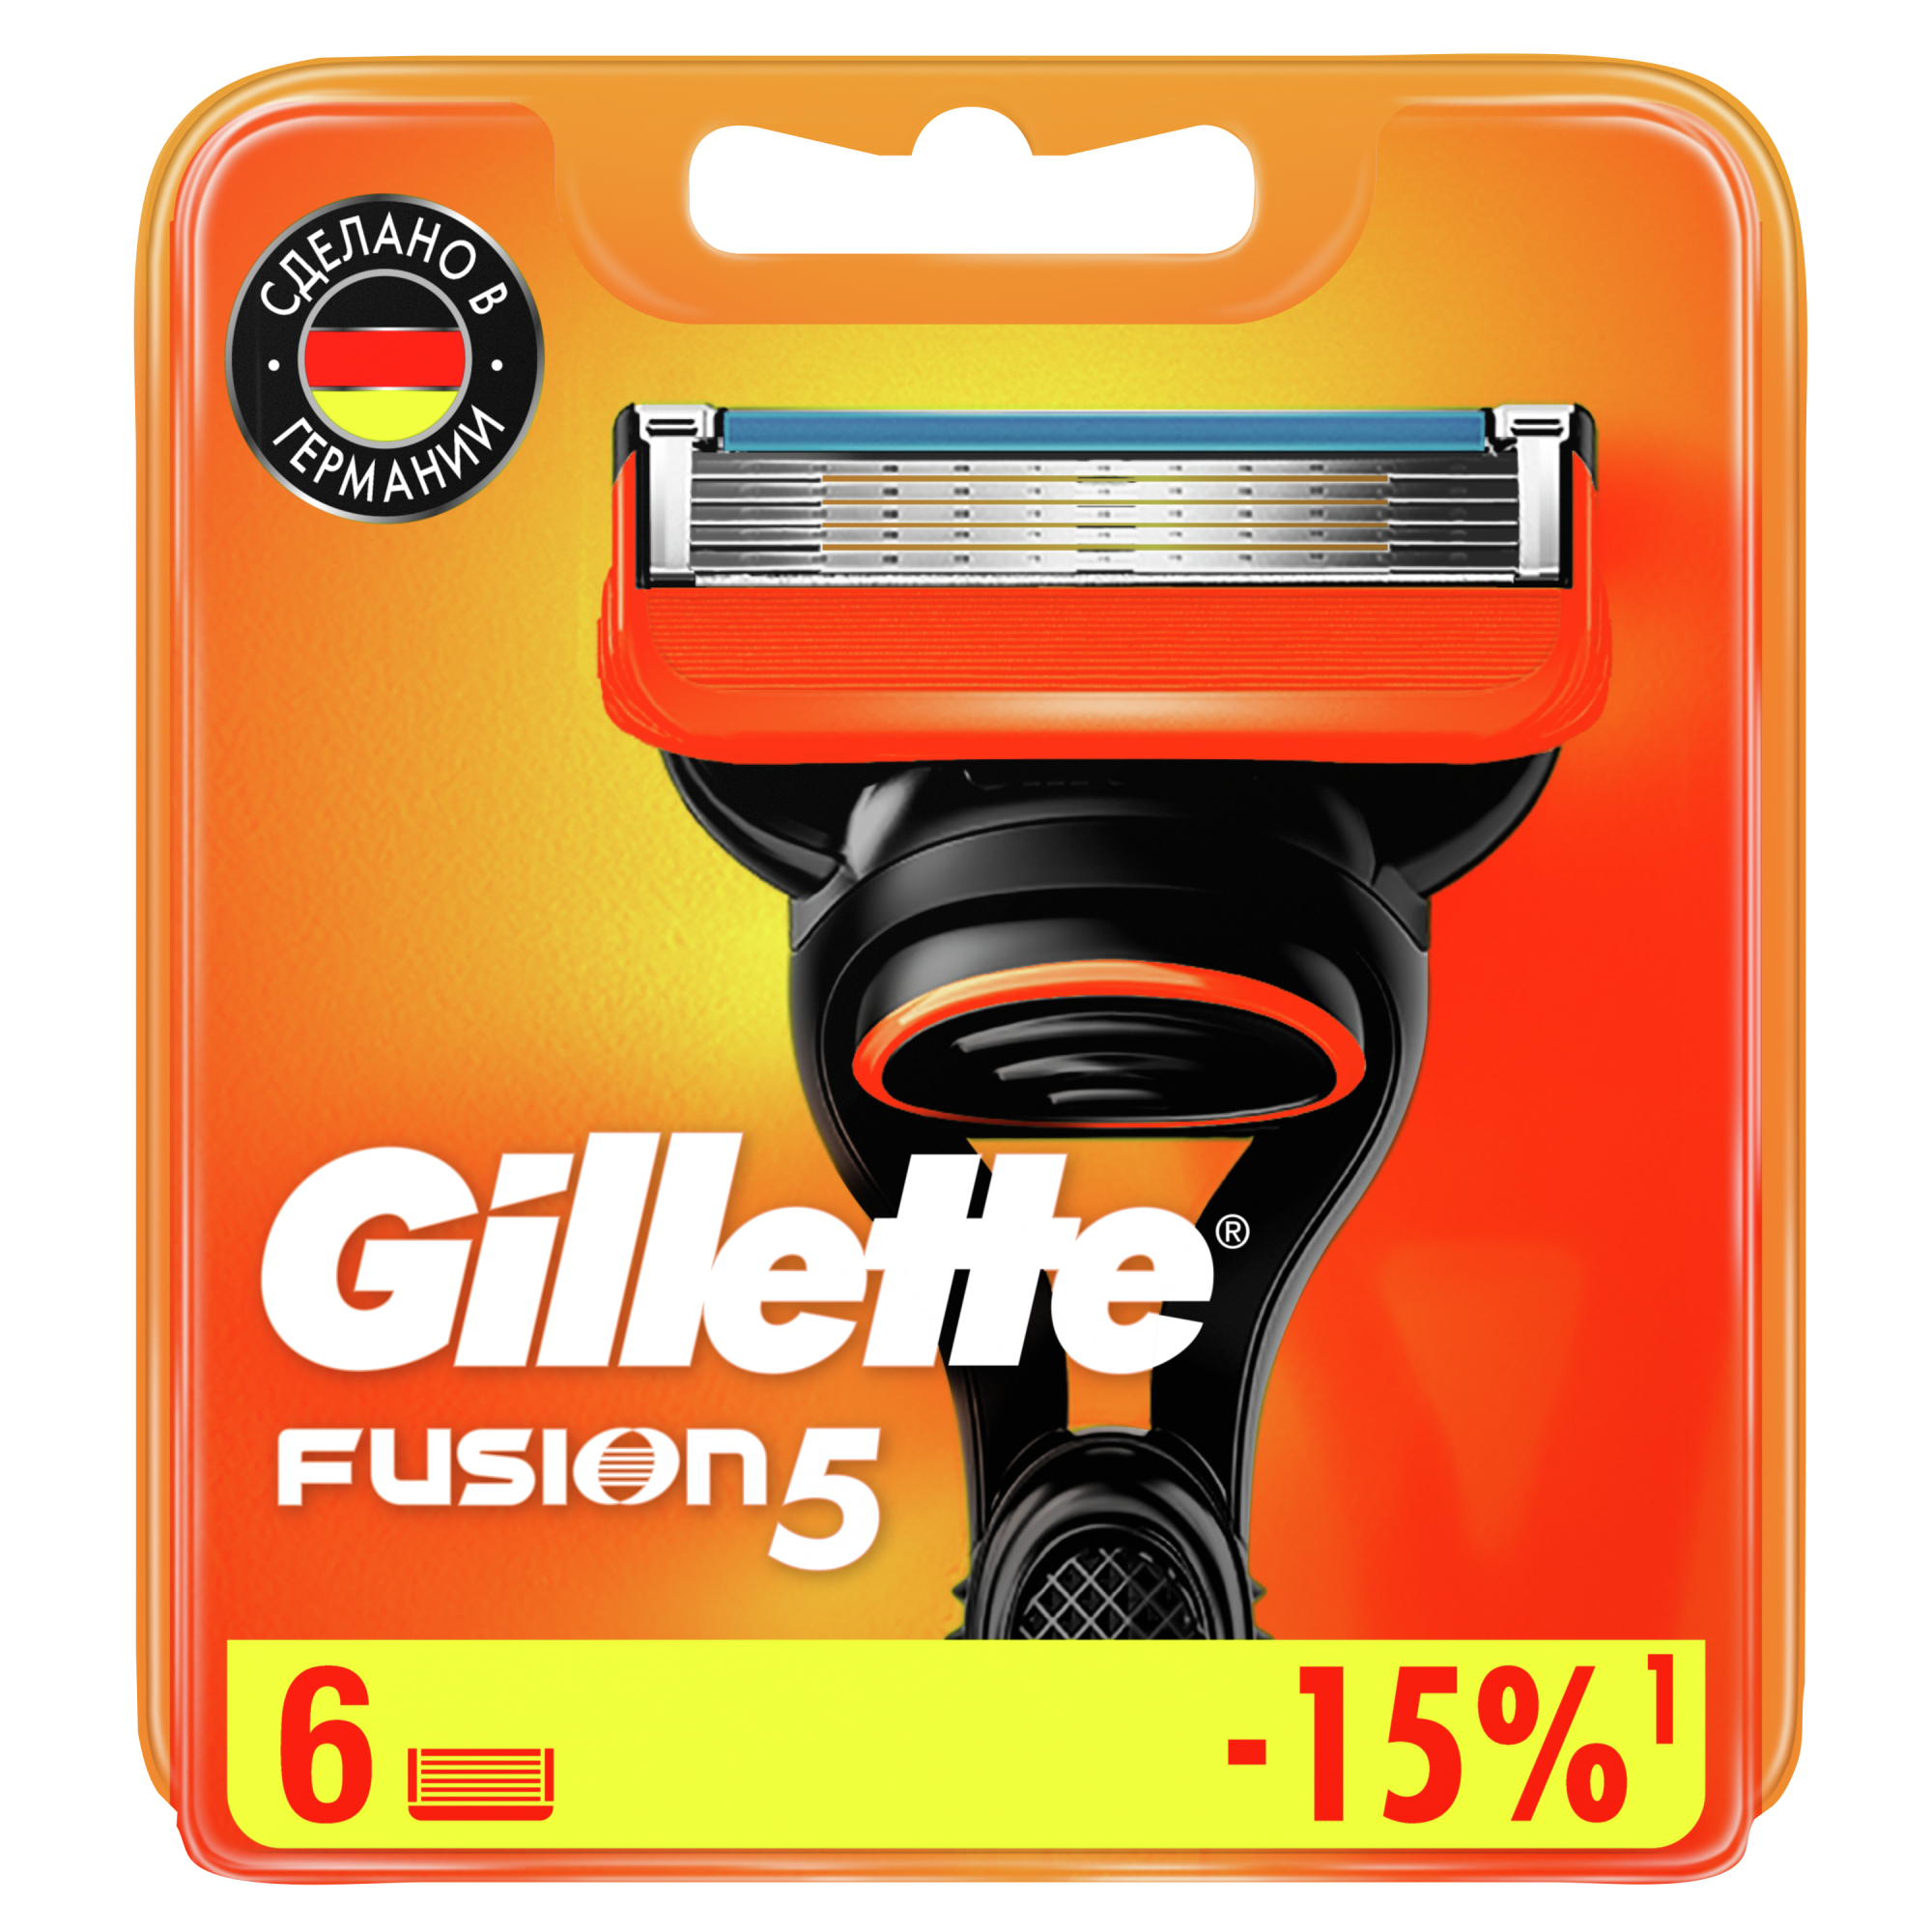 Сменные кассеты для мужской бритвы Gillette Fusion5 Power, с 5 лезвиями, c точным триммером для труднодоступных мест, для гладкого бритья надолго, 6 шт бритва gillette fusion5 proglide power flexball с 1 сменной кассетой